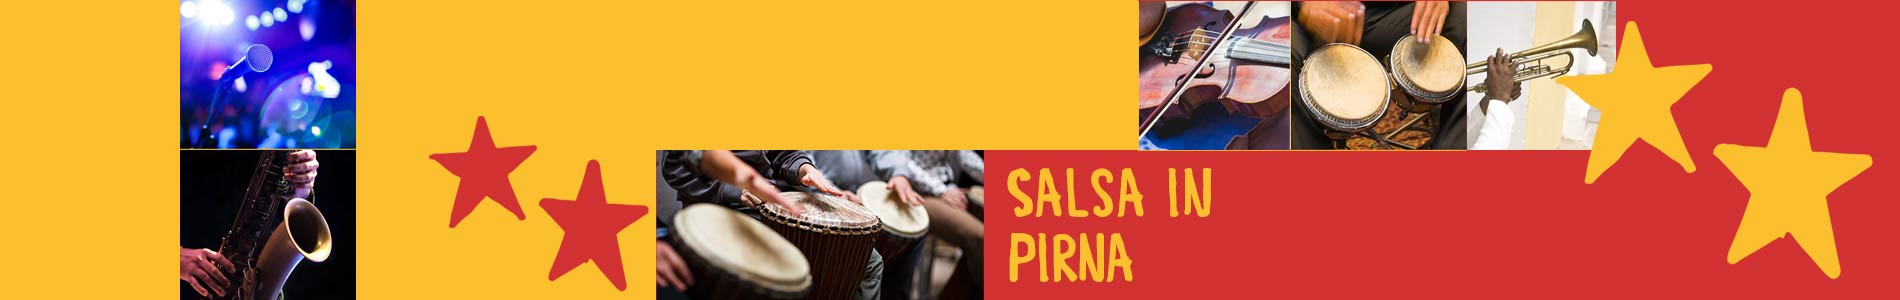 Salsa in Pirna – Salsa lernen und tanzen, Tanzkurse, Partys, Veranstaltungen